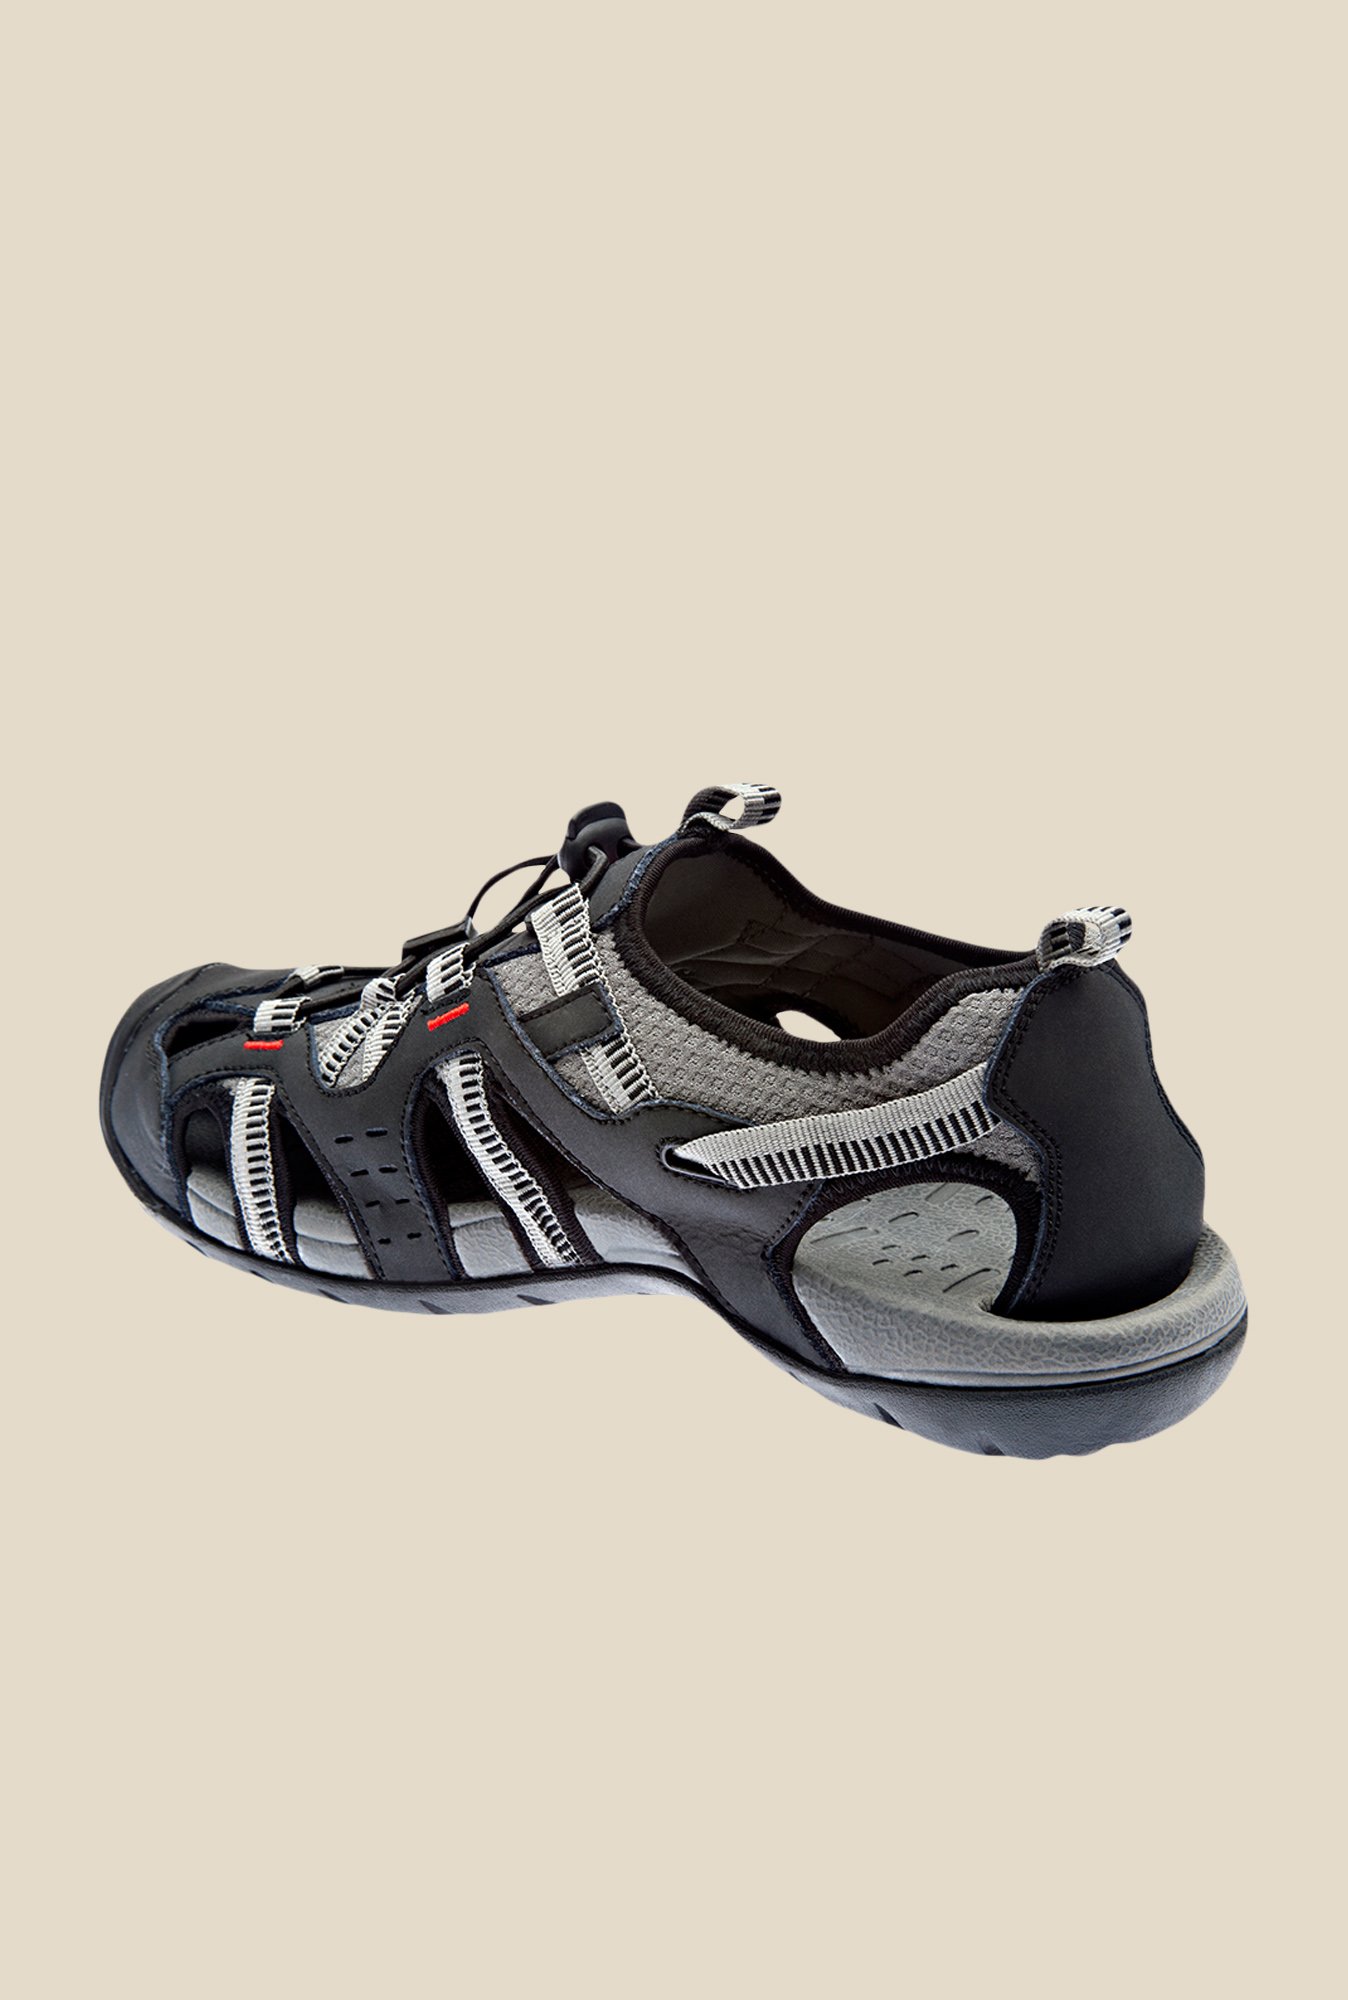 Wildcraft Cross Black Sandals - Buy Wildcraft Cross Black Sandals online in  India